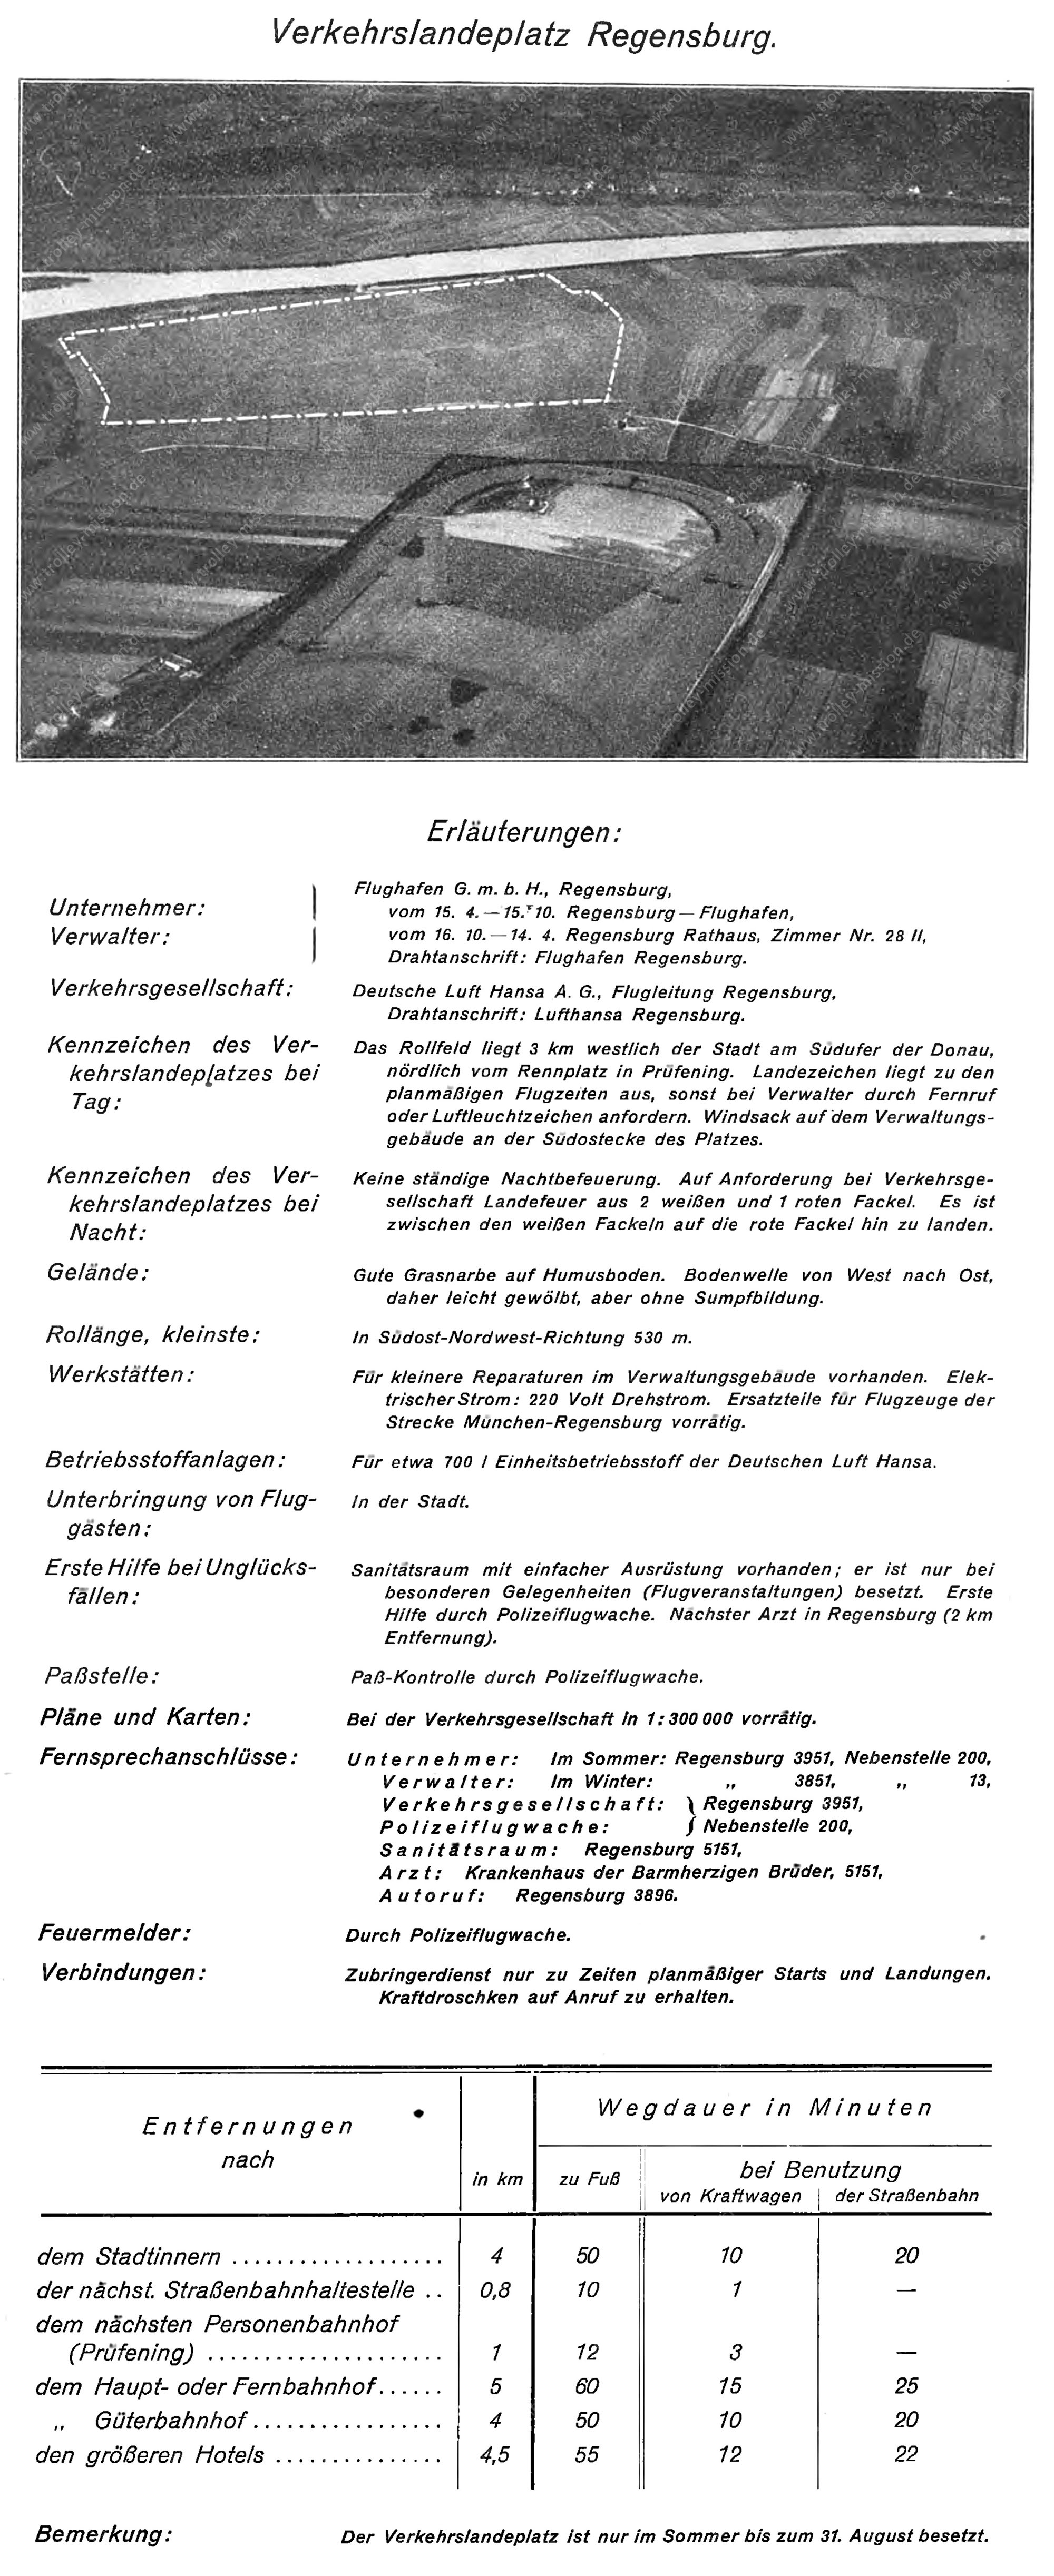 Flughandbuch für das Deutsche Reich - Flugplatz Regensburg